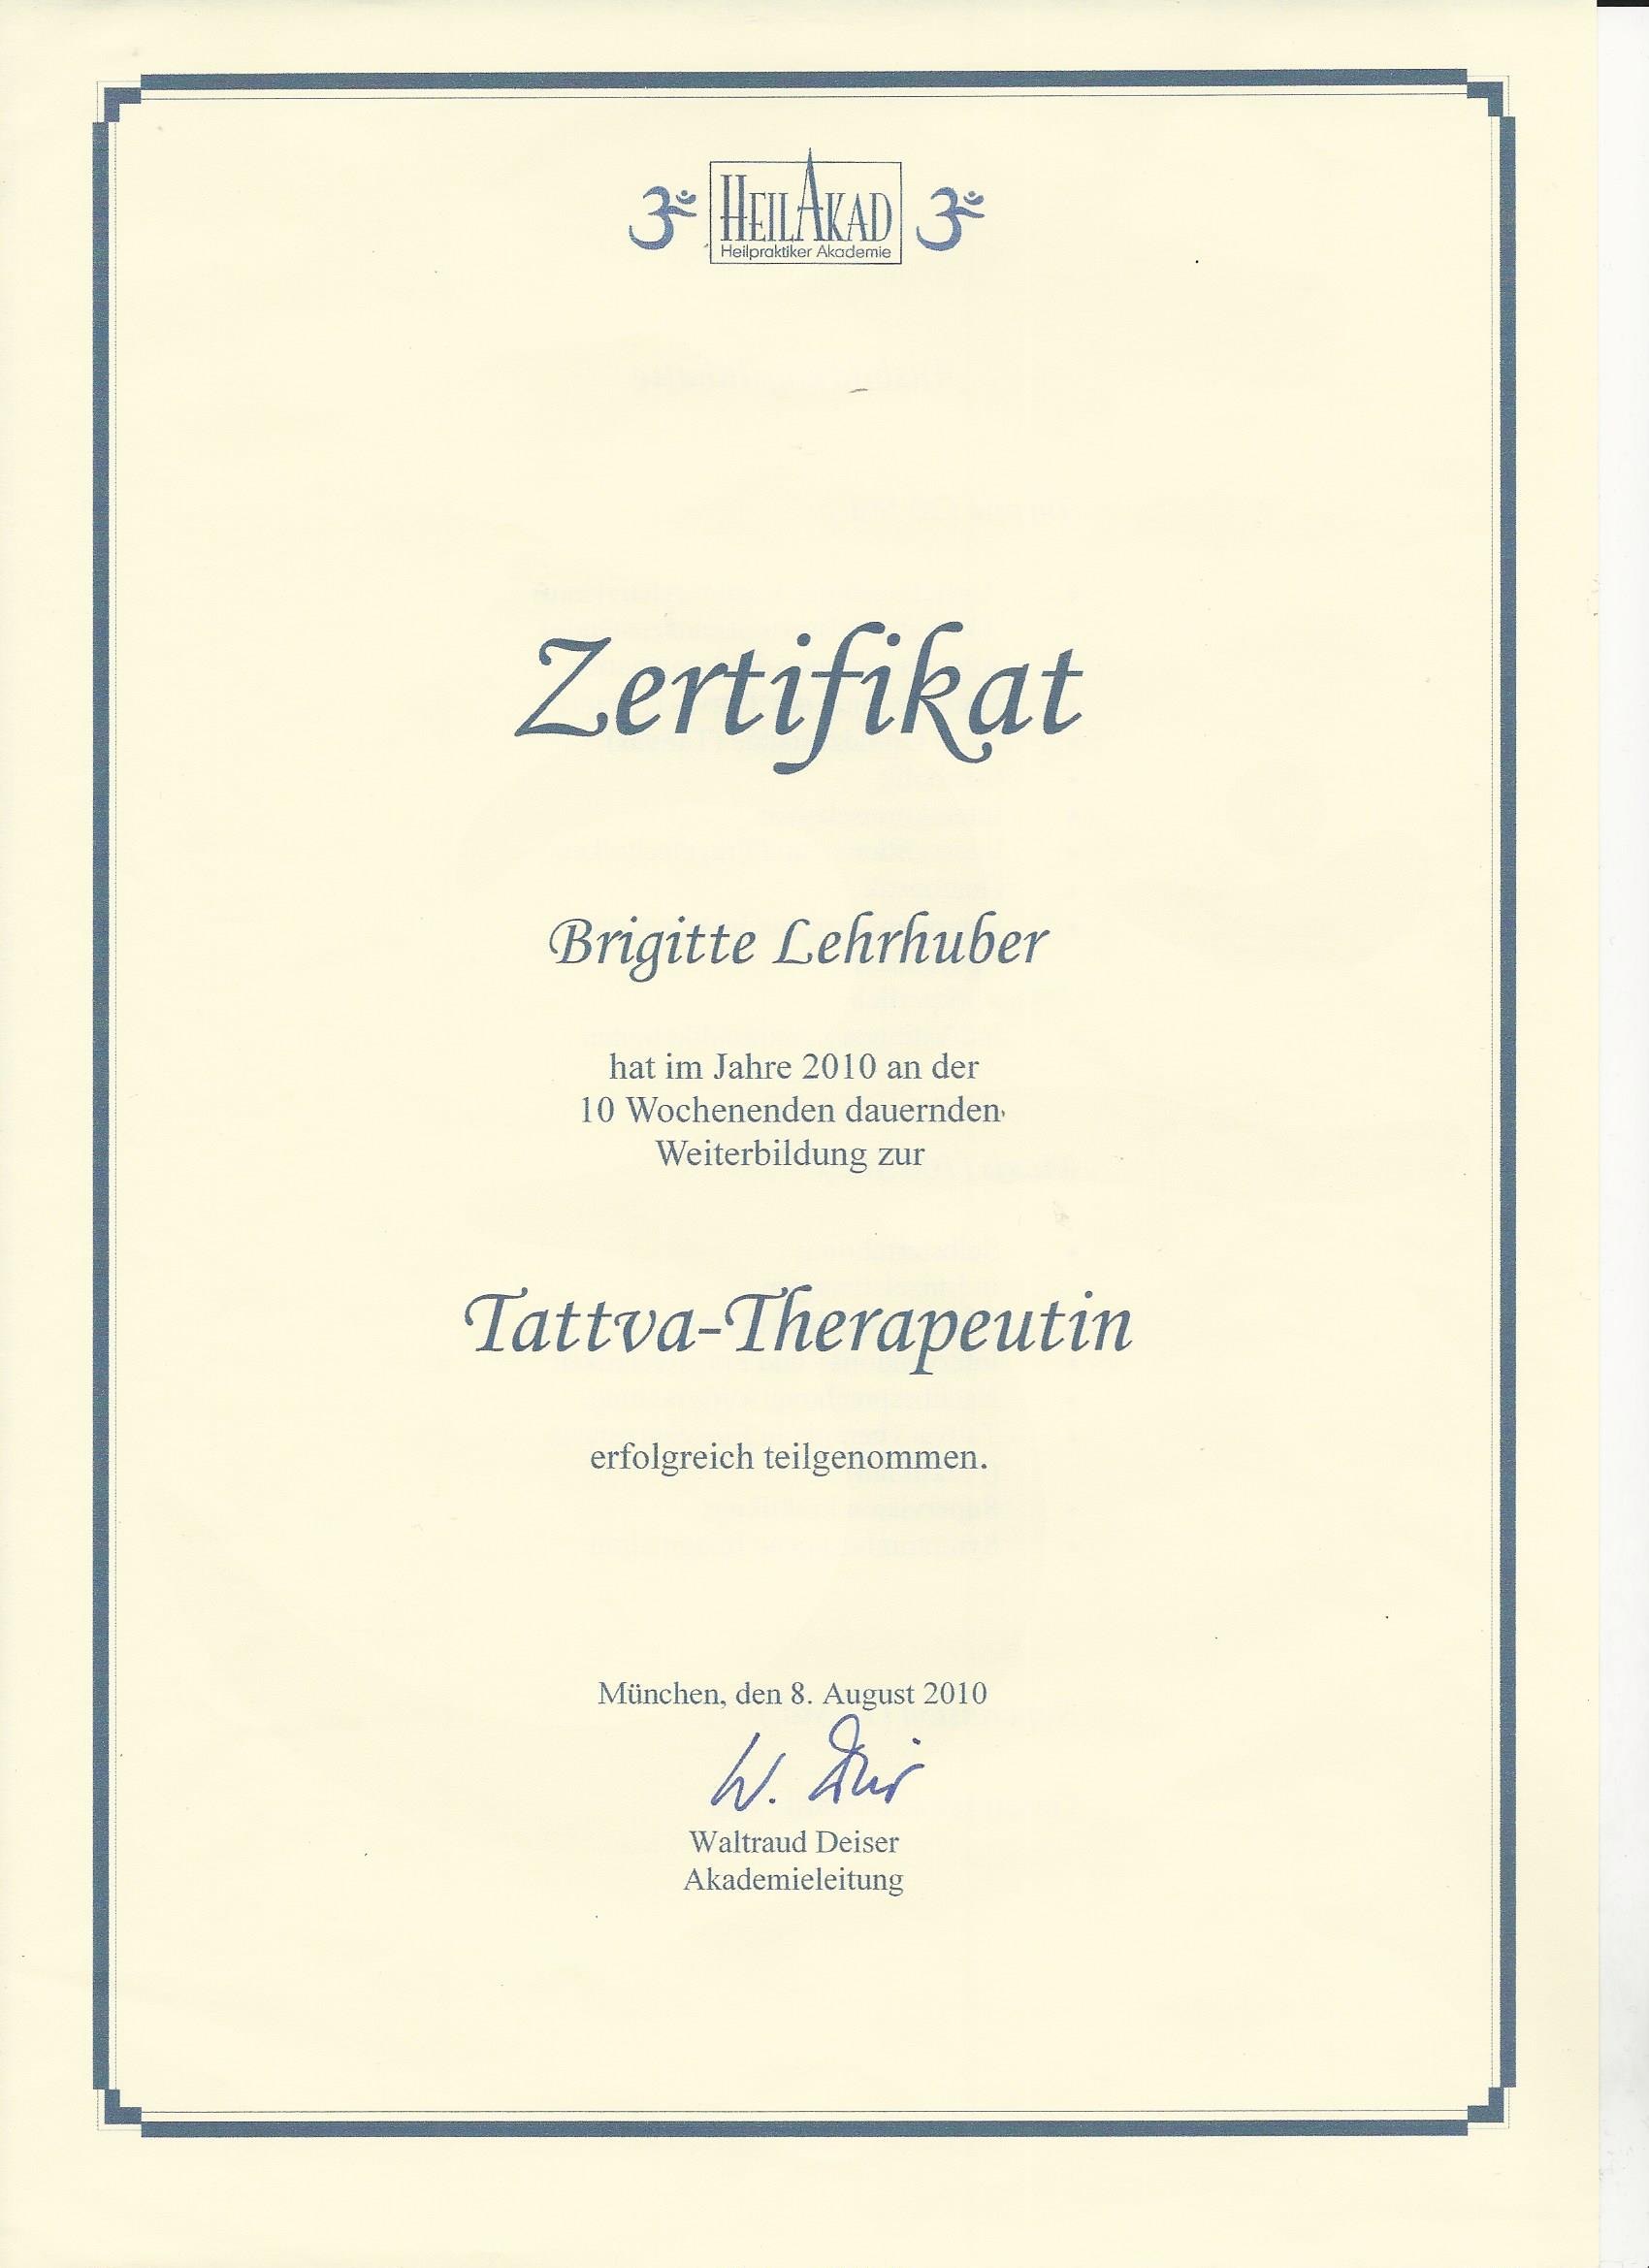 Tattva-Thrapeutin Zertifikat